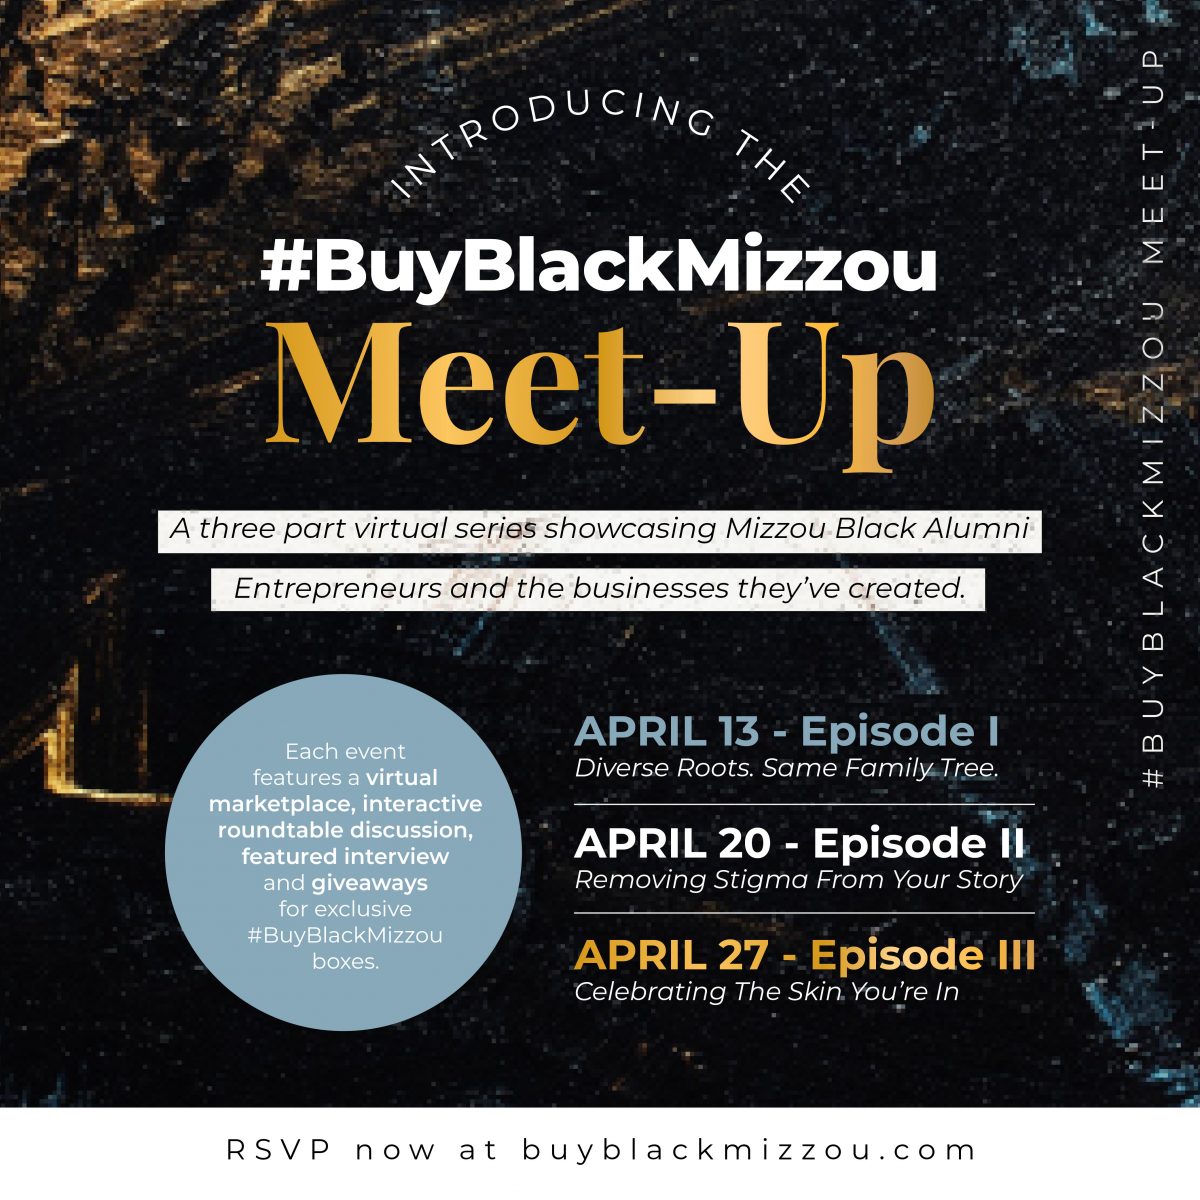 Introducing the #BuyBlackMizzou Meet-Up.